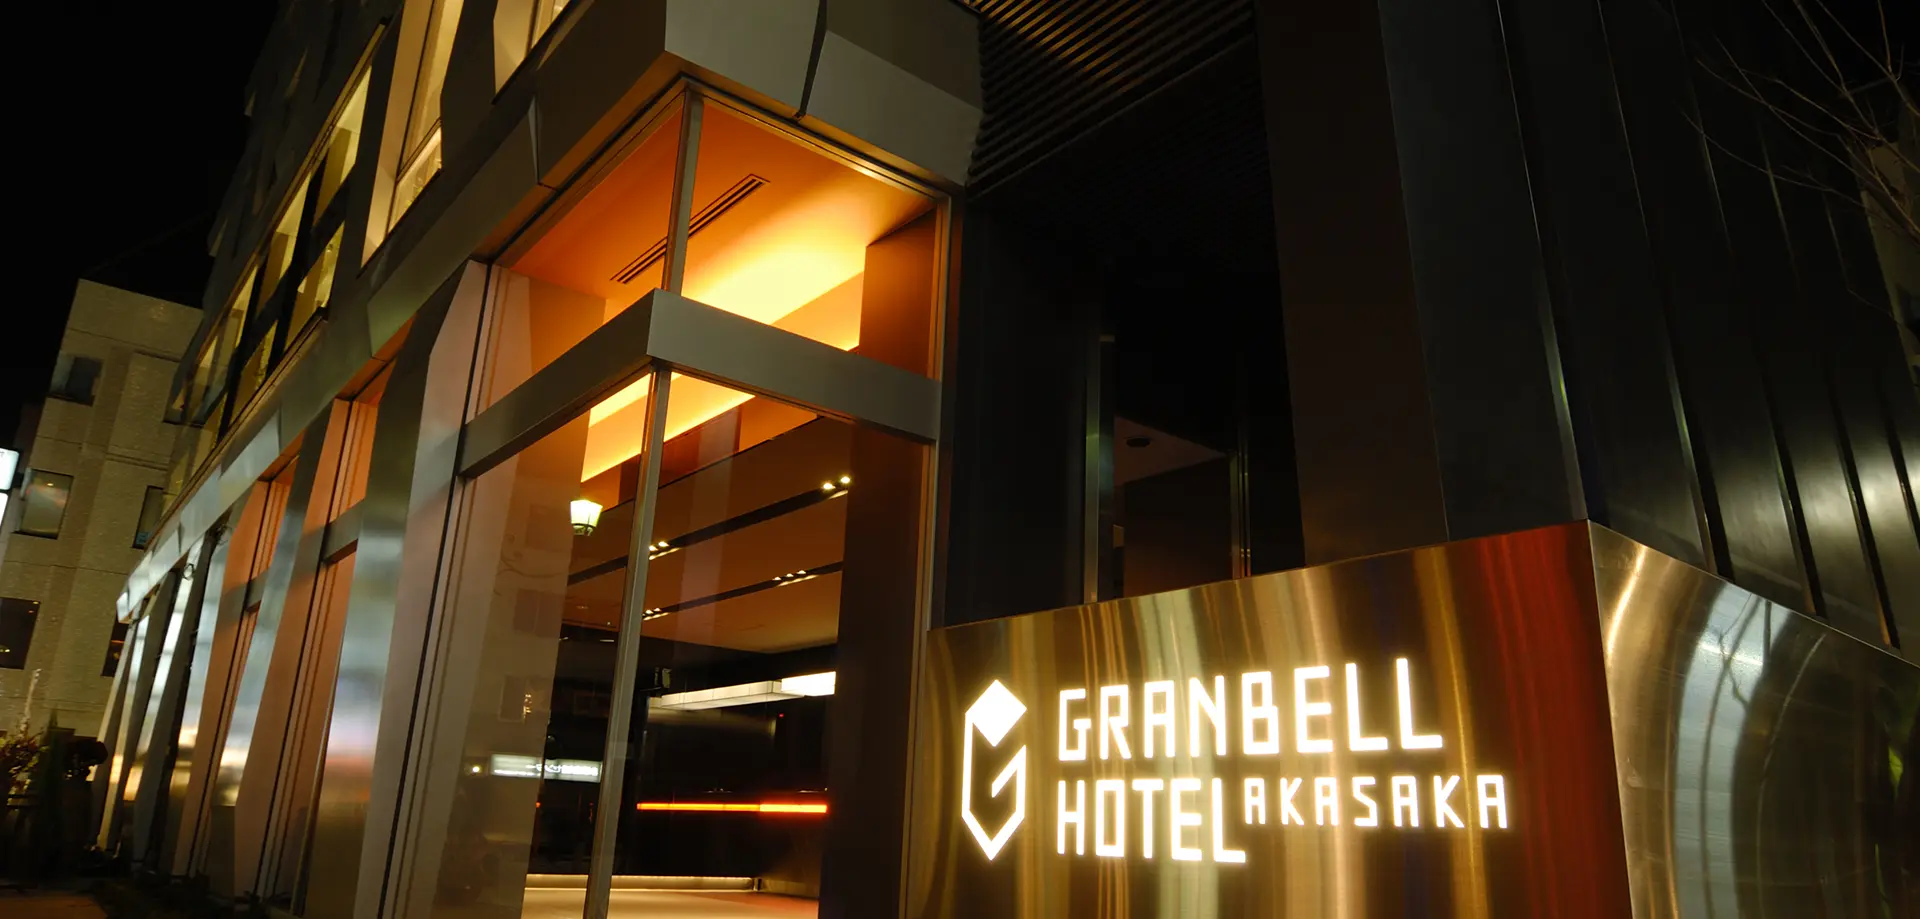 赤坂グランベルホテル